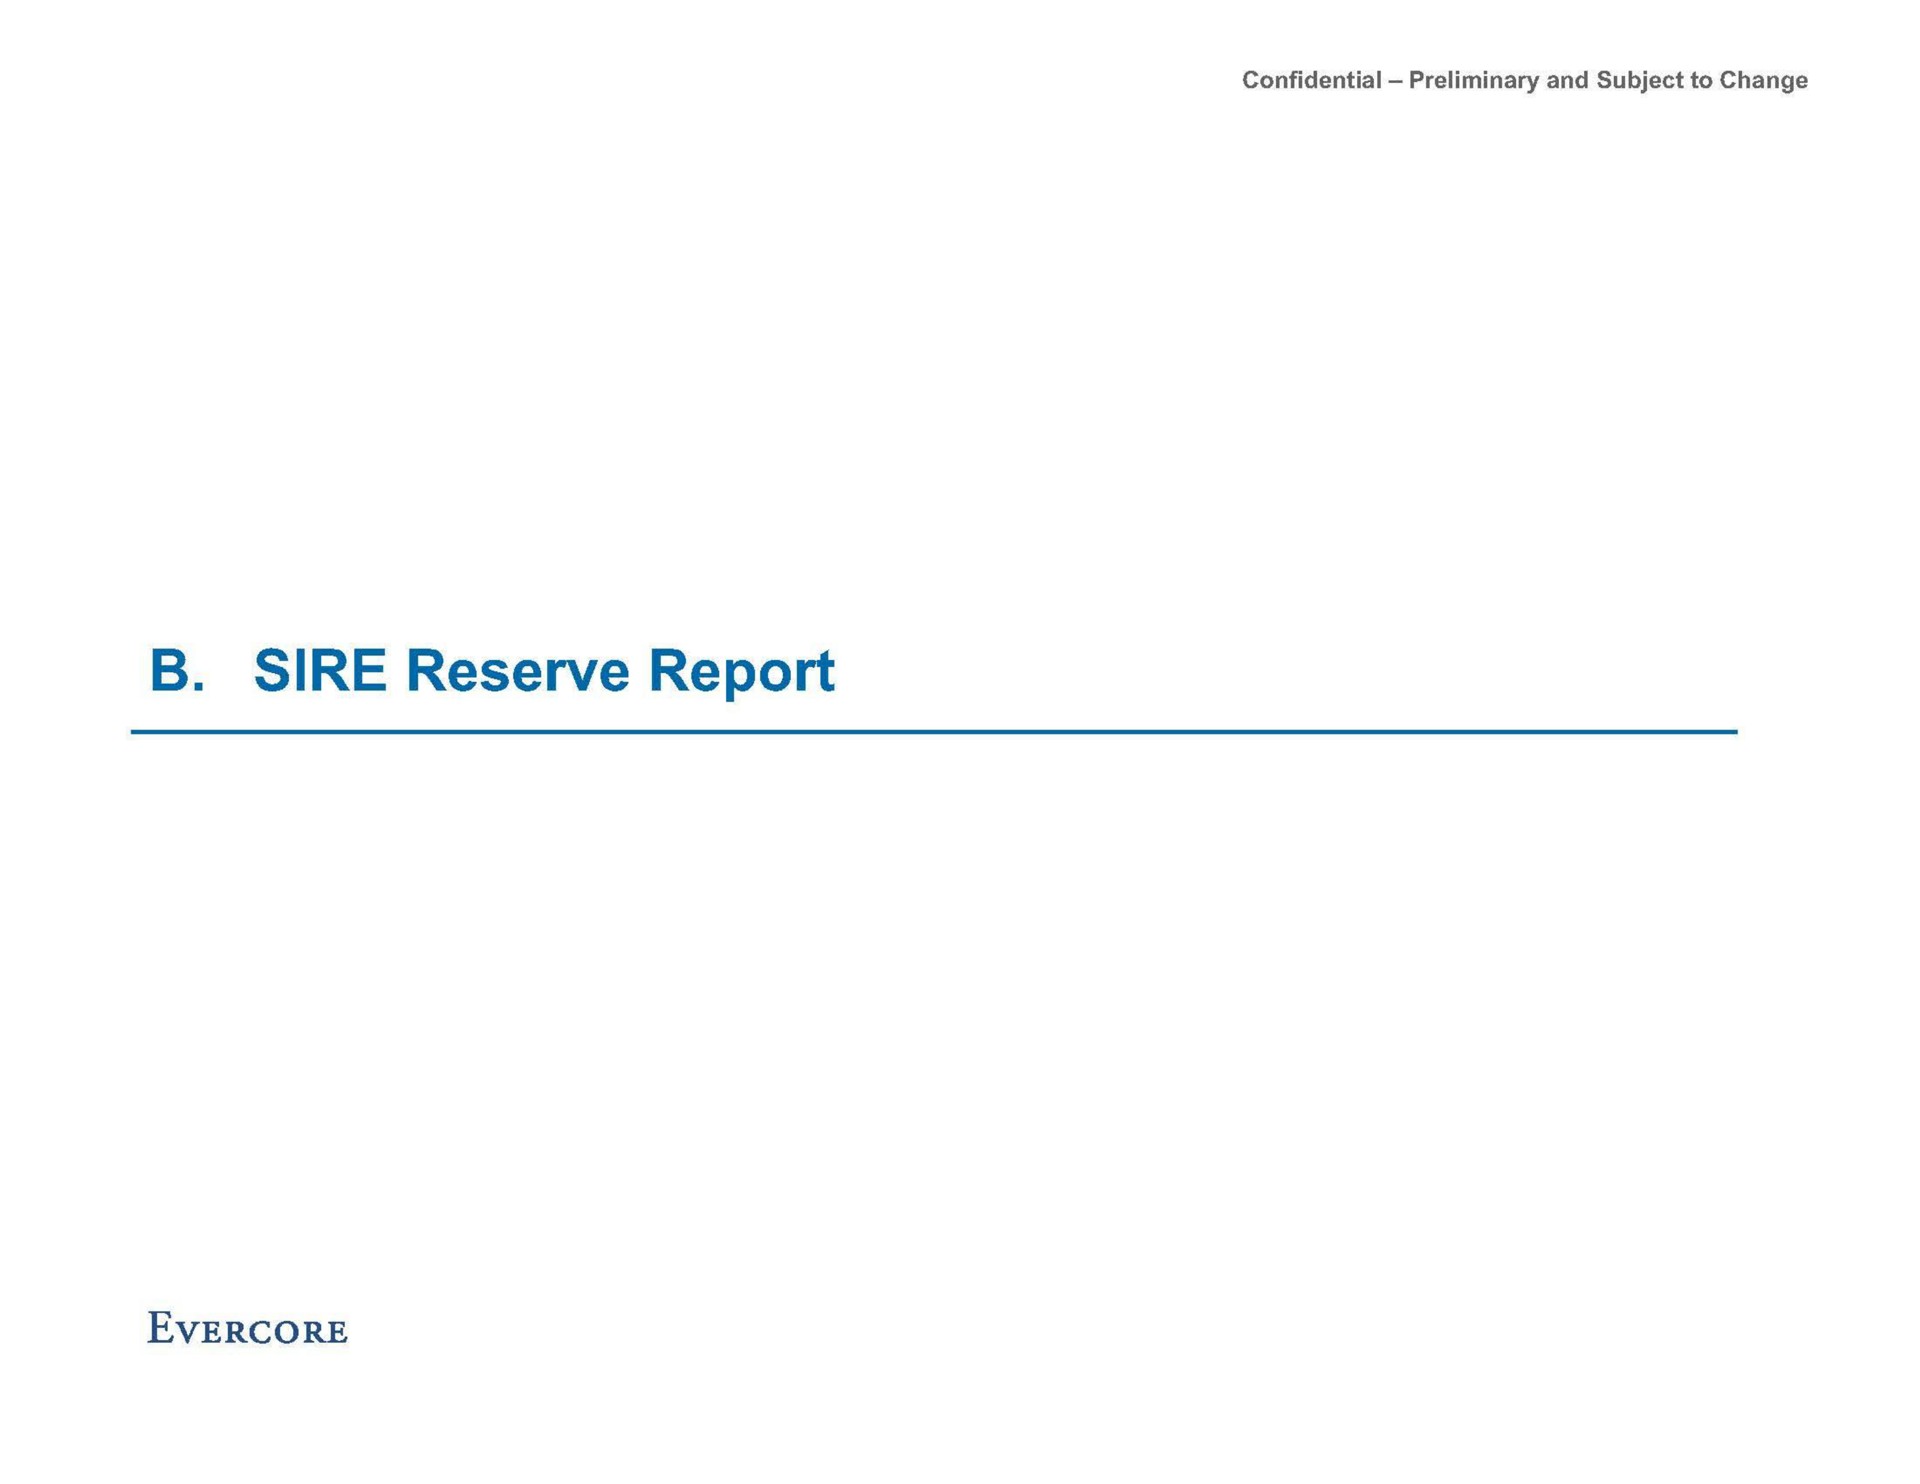 sire reserve report | Evercore